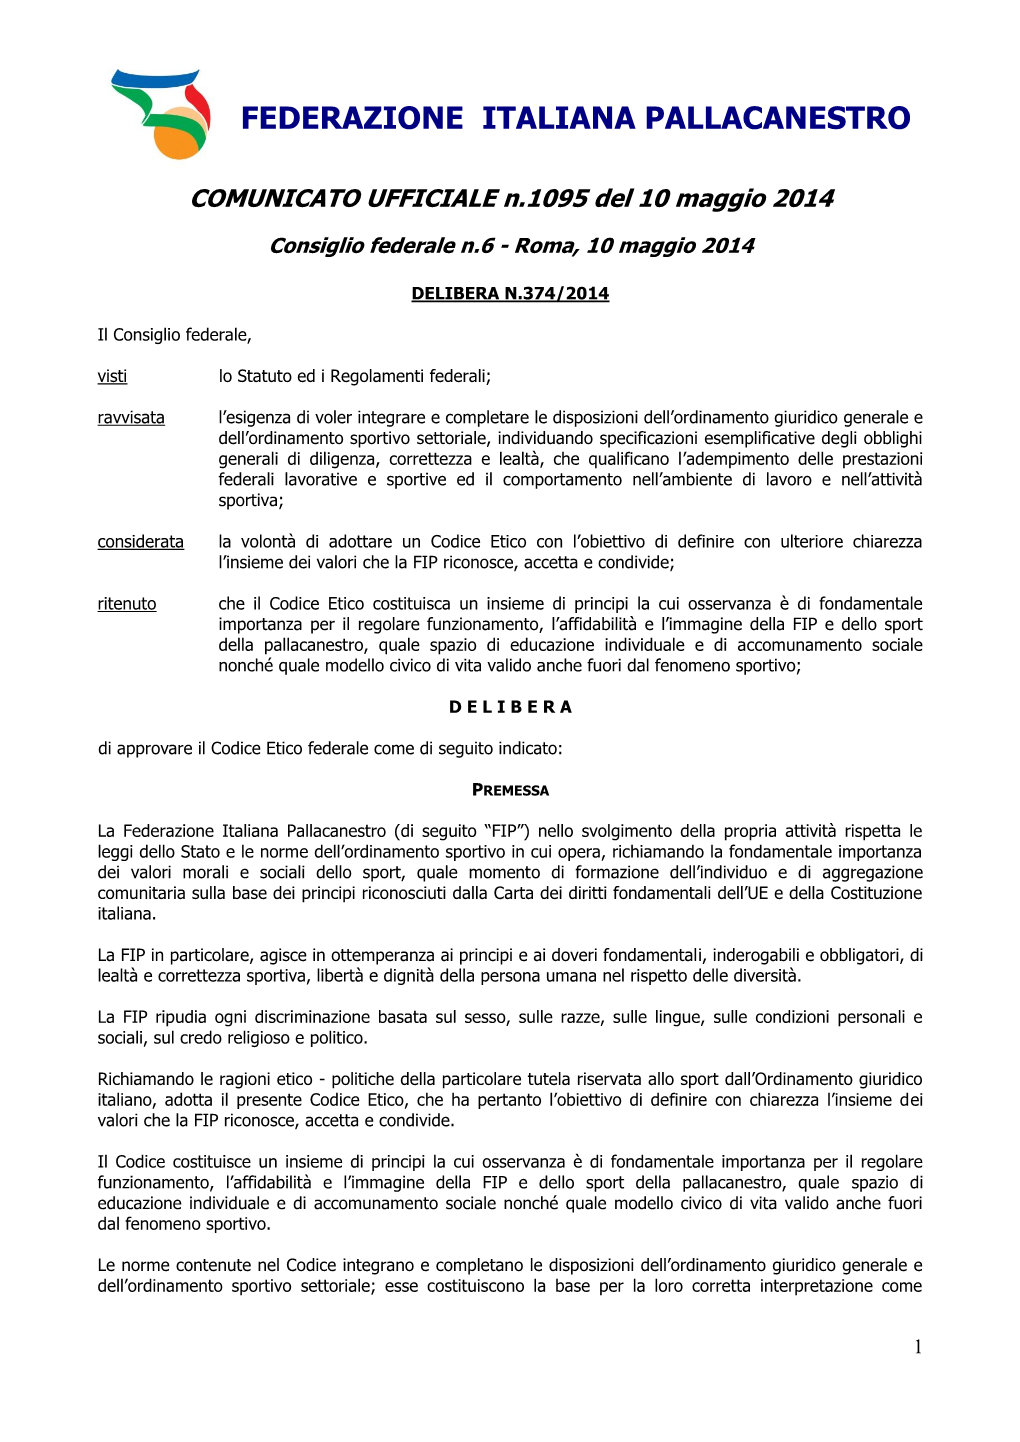 FEDERAZIONE ITALIANA PALLACANESTRO COMUNICATO UFFICIALE N.1095 Del 10 Maggio 2014